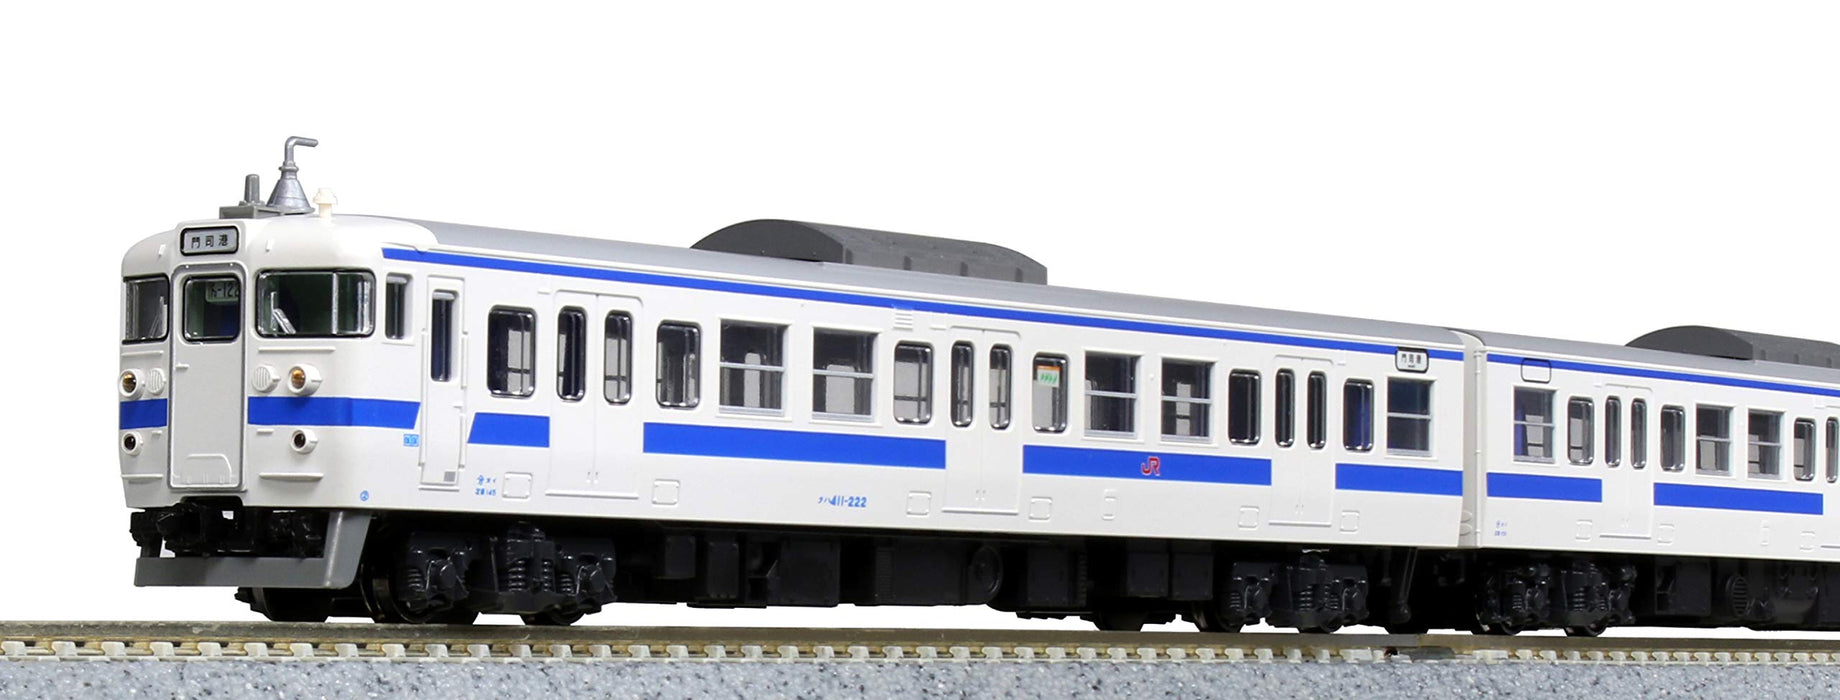 Kato N Spur 415 Serie 4-Wagen-Eisenbahnmodellzug-Set, Kyushu-Farbe, 10-1538